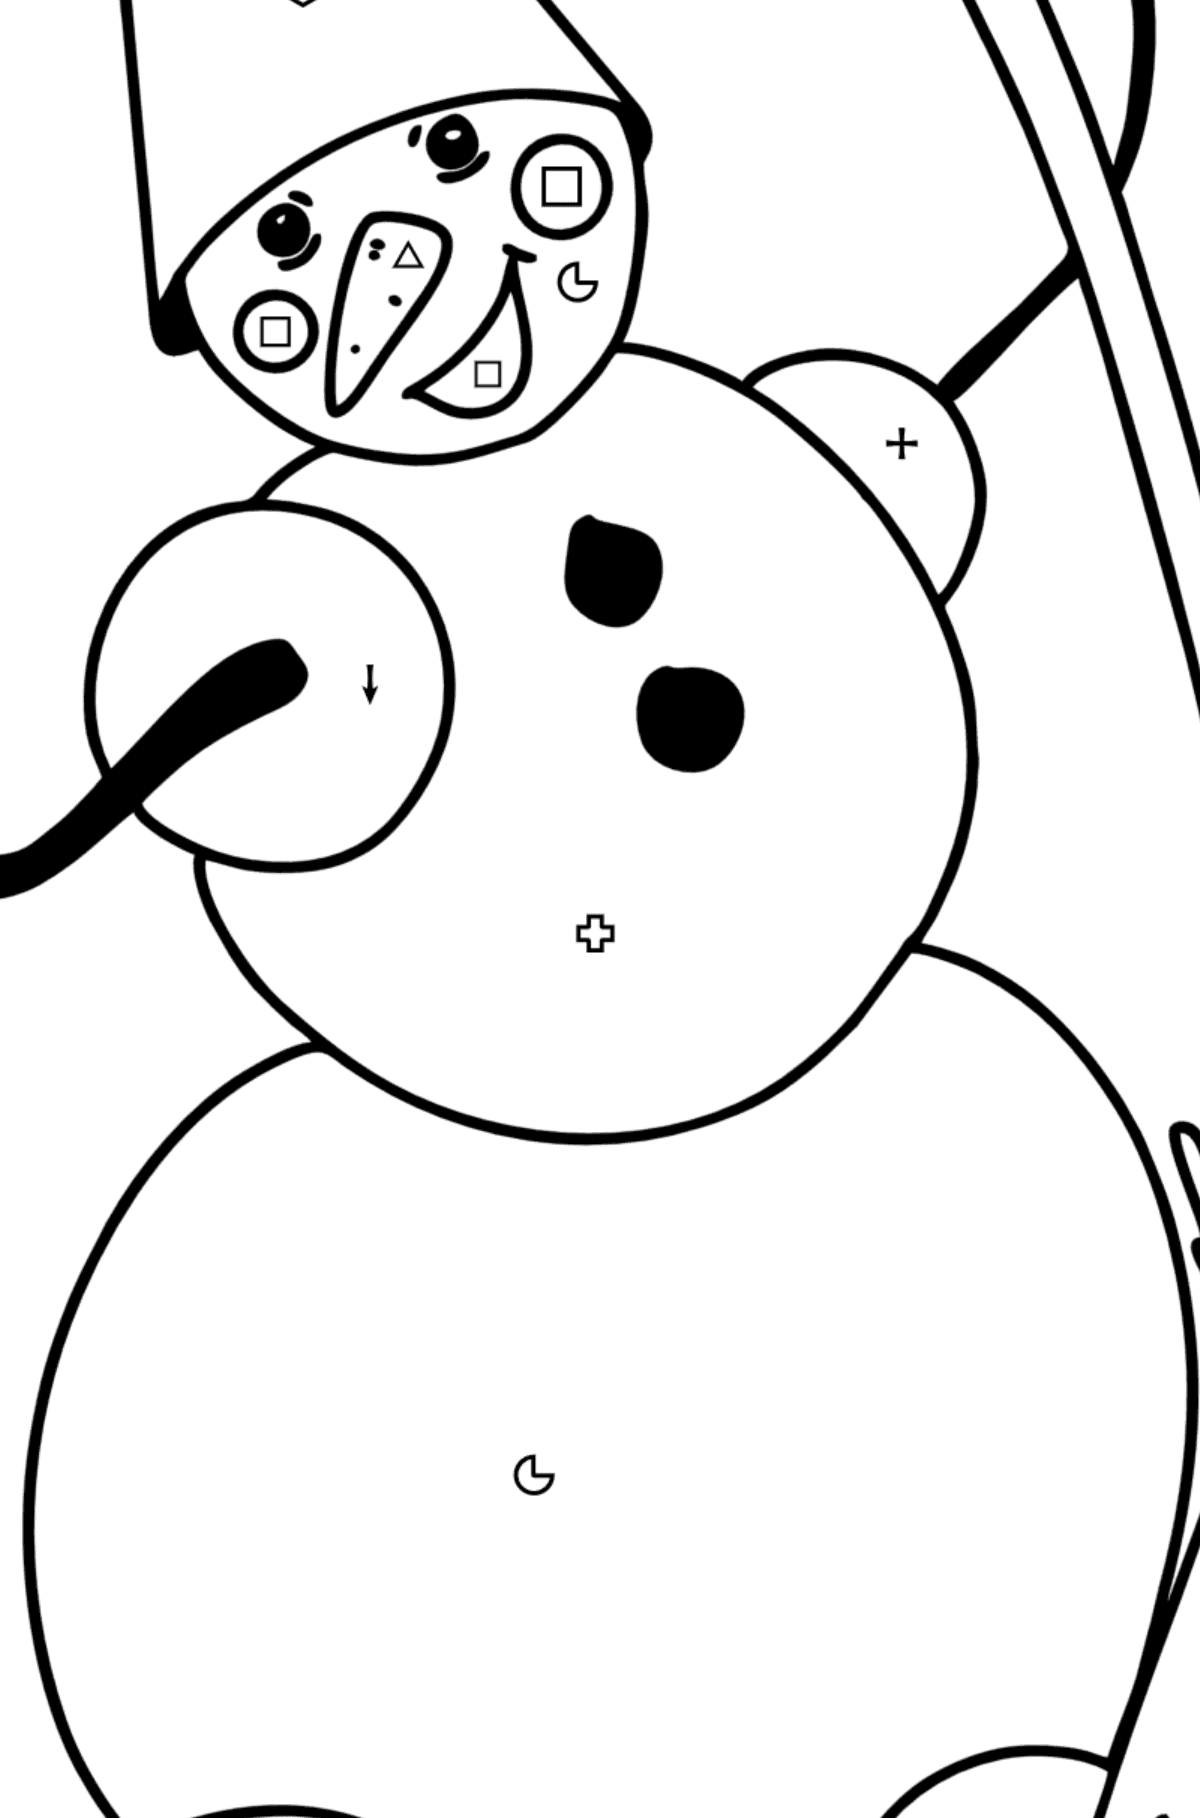 Desenho para colorir do boneco de neve com vassoura - Colorir por Símbolos para Crianças